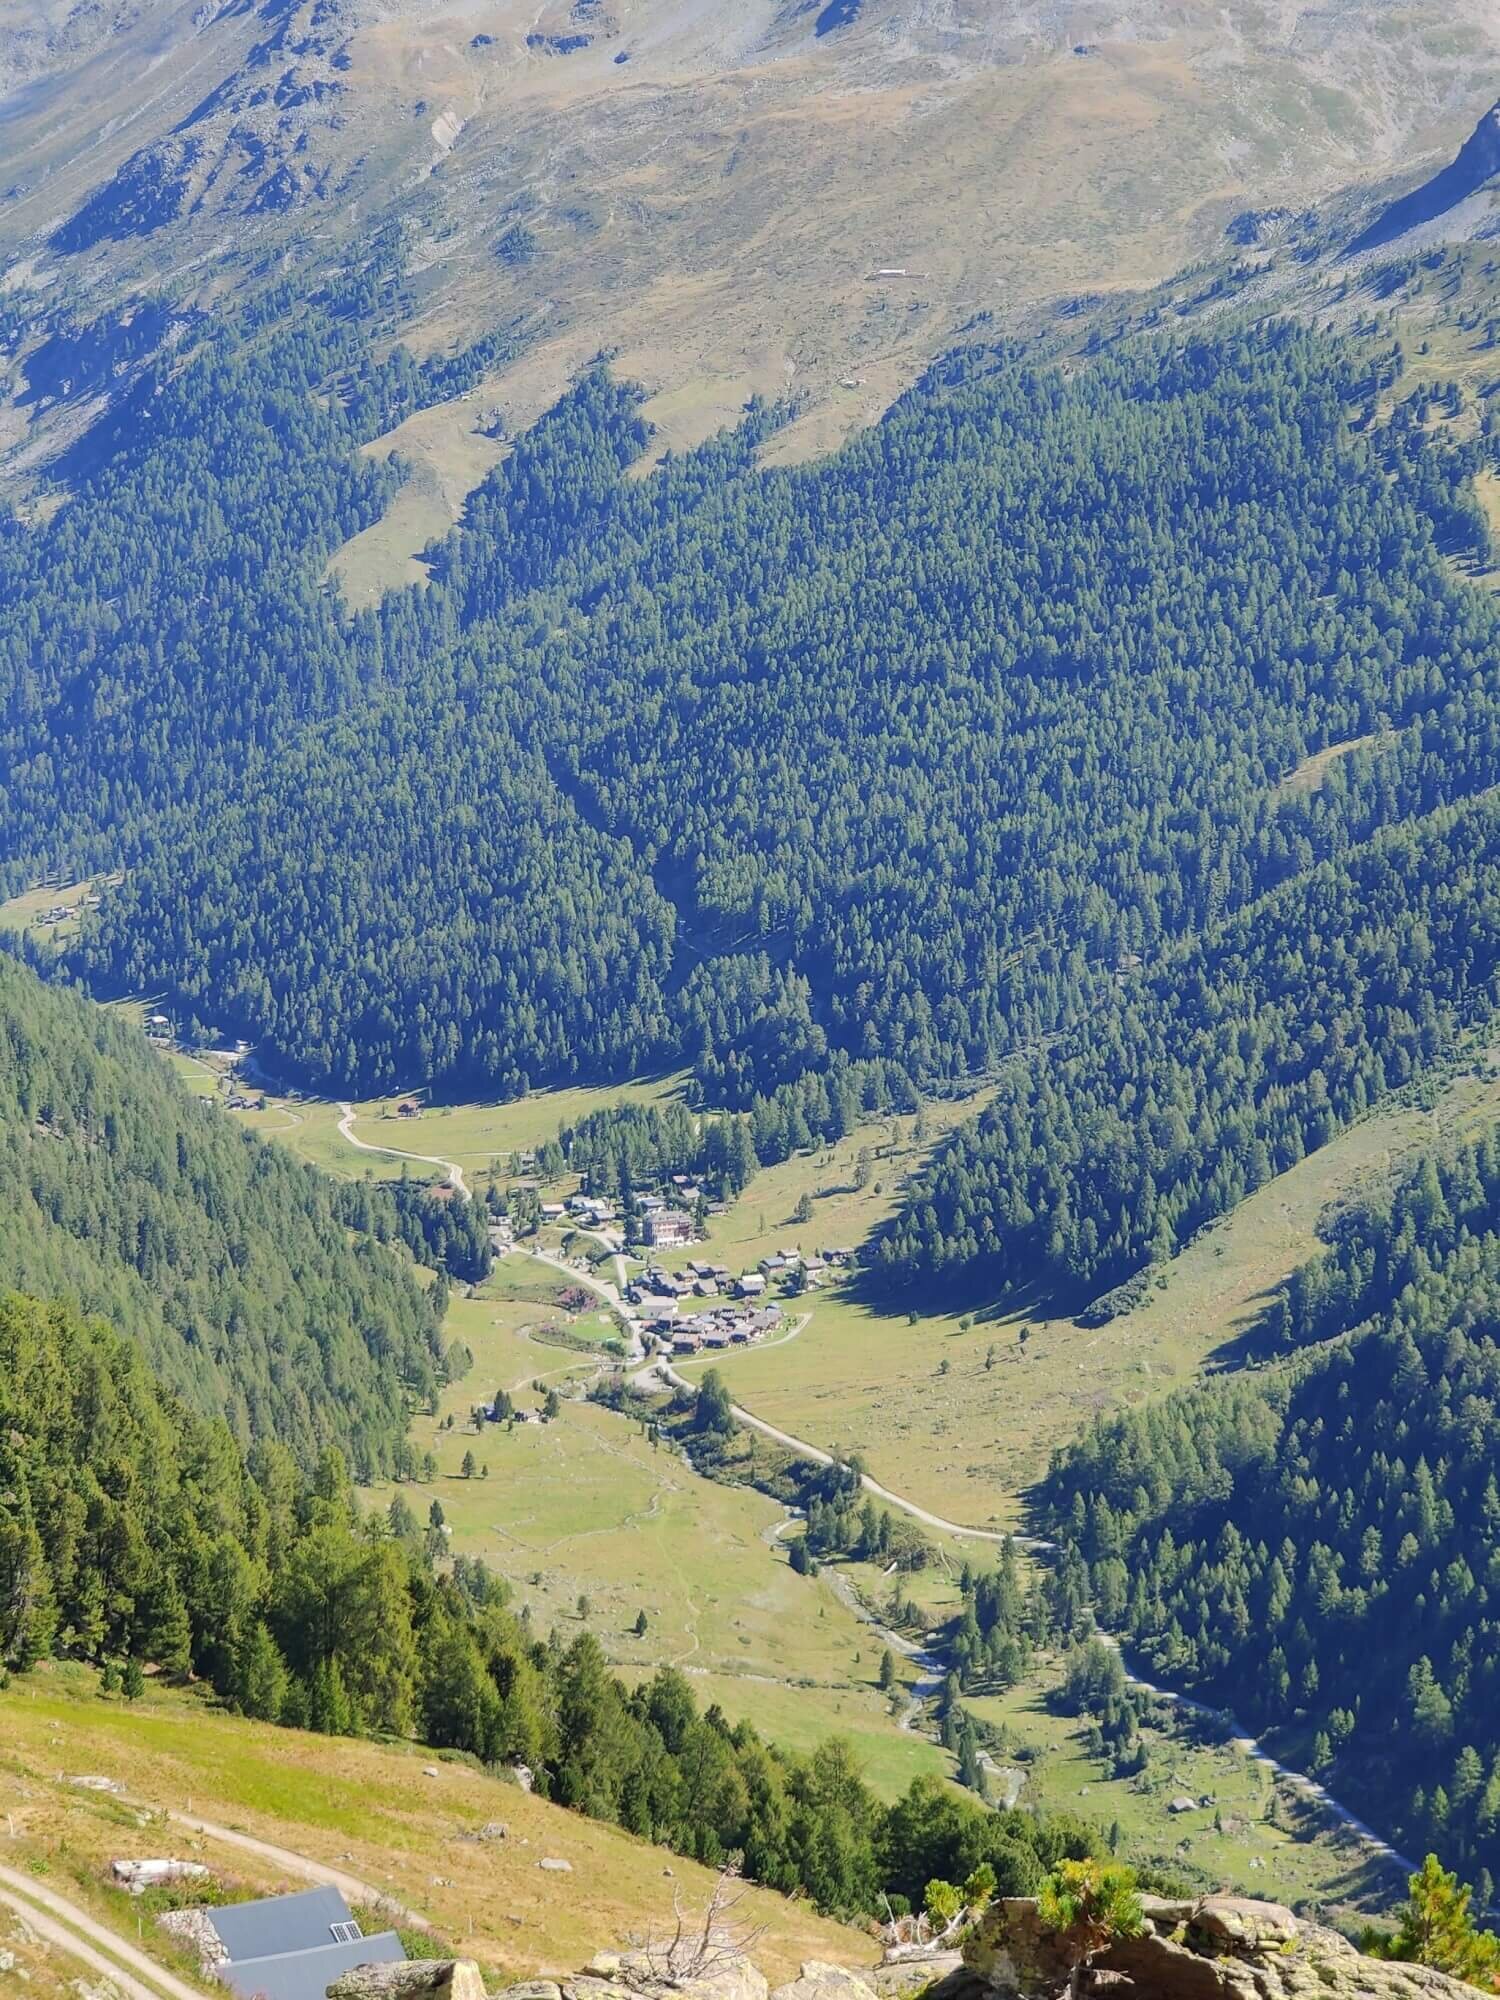 Gruben in the valley from the trail via Turtmannhutte